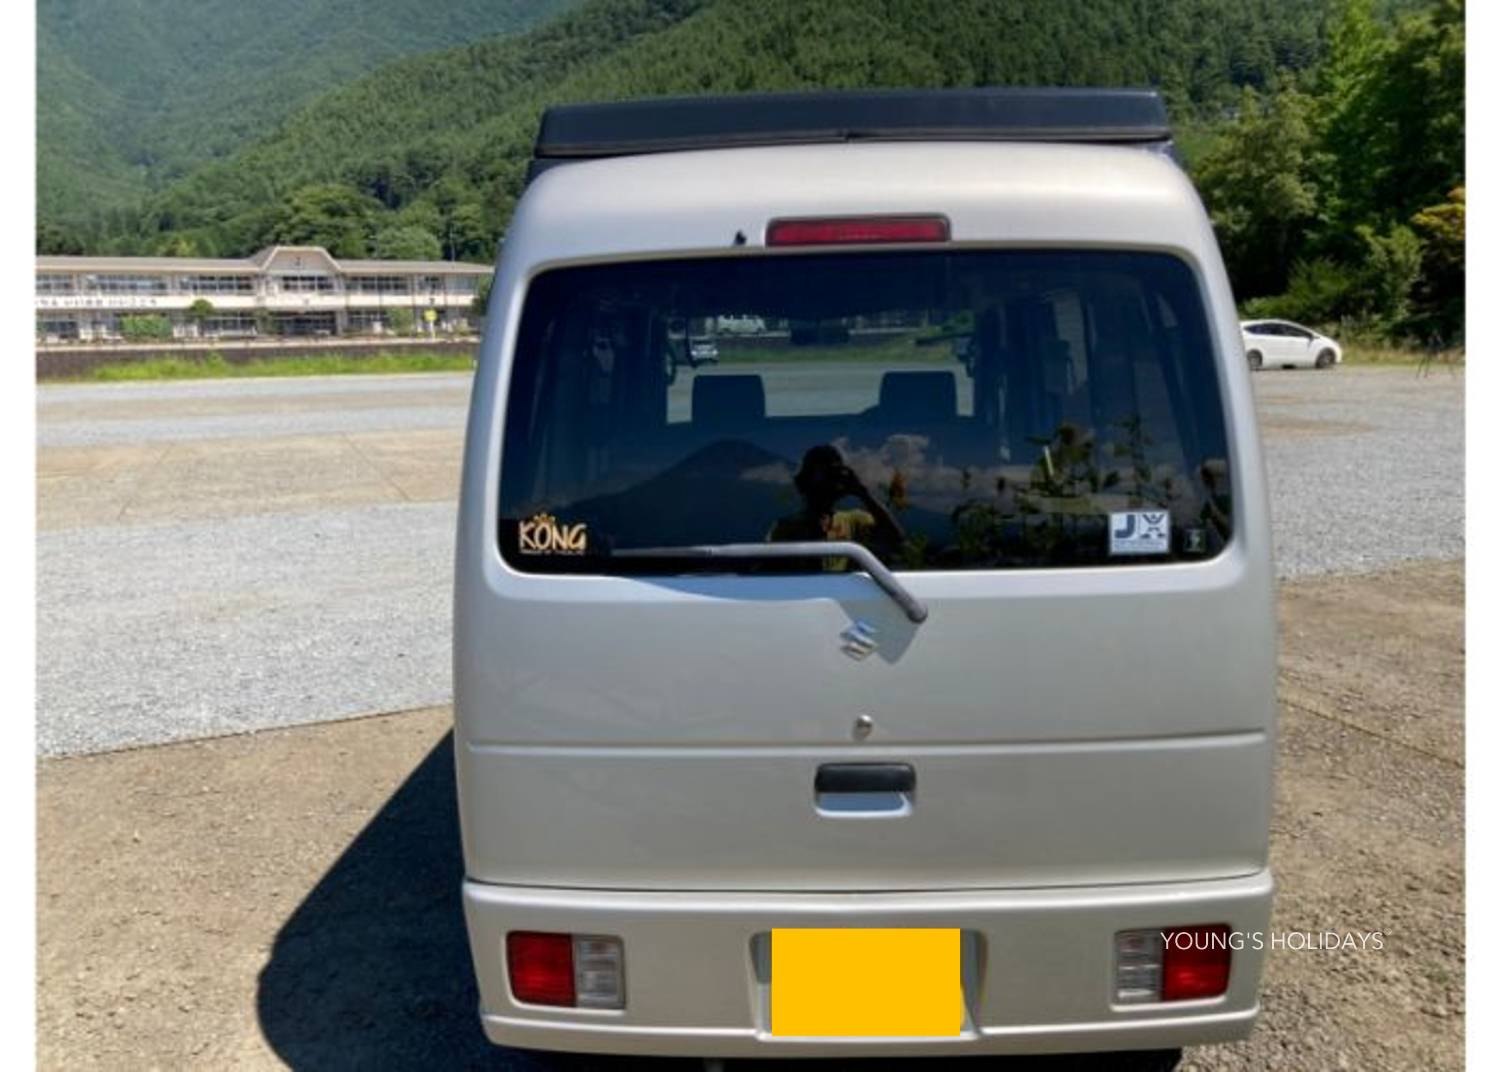 【Kawaguchiko】Japan Rental 2 People Caravan RV Road Trip Experience (C- EFLKP)